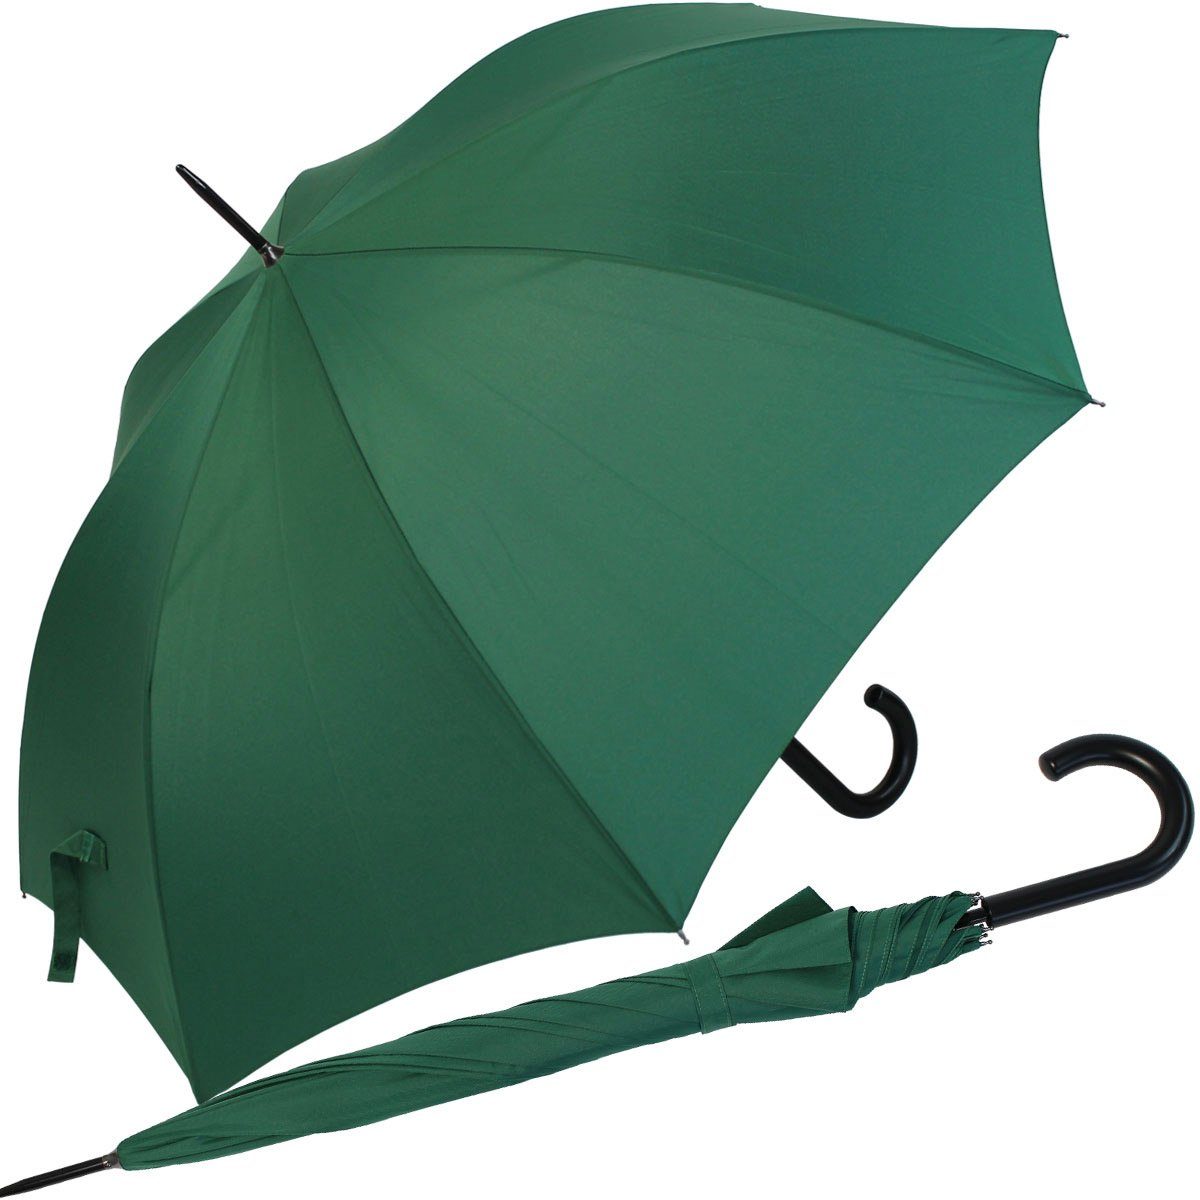 RS-Versand Langregenschirm großer stabiler Regenschirm mit Auf-Automatik, für Damen und Herren in vielen modischen Farben grün